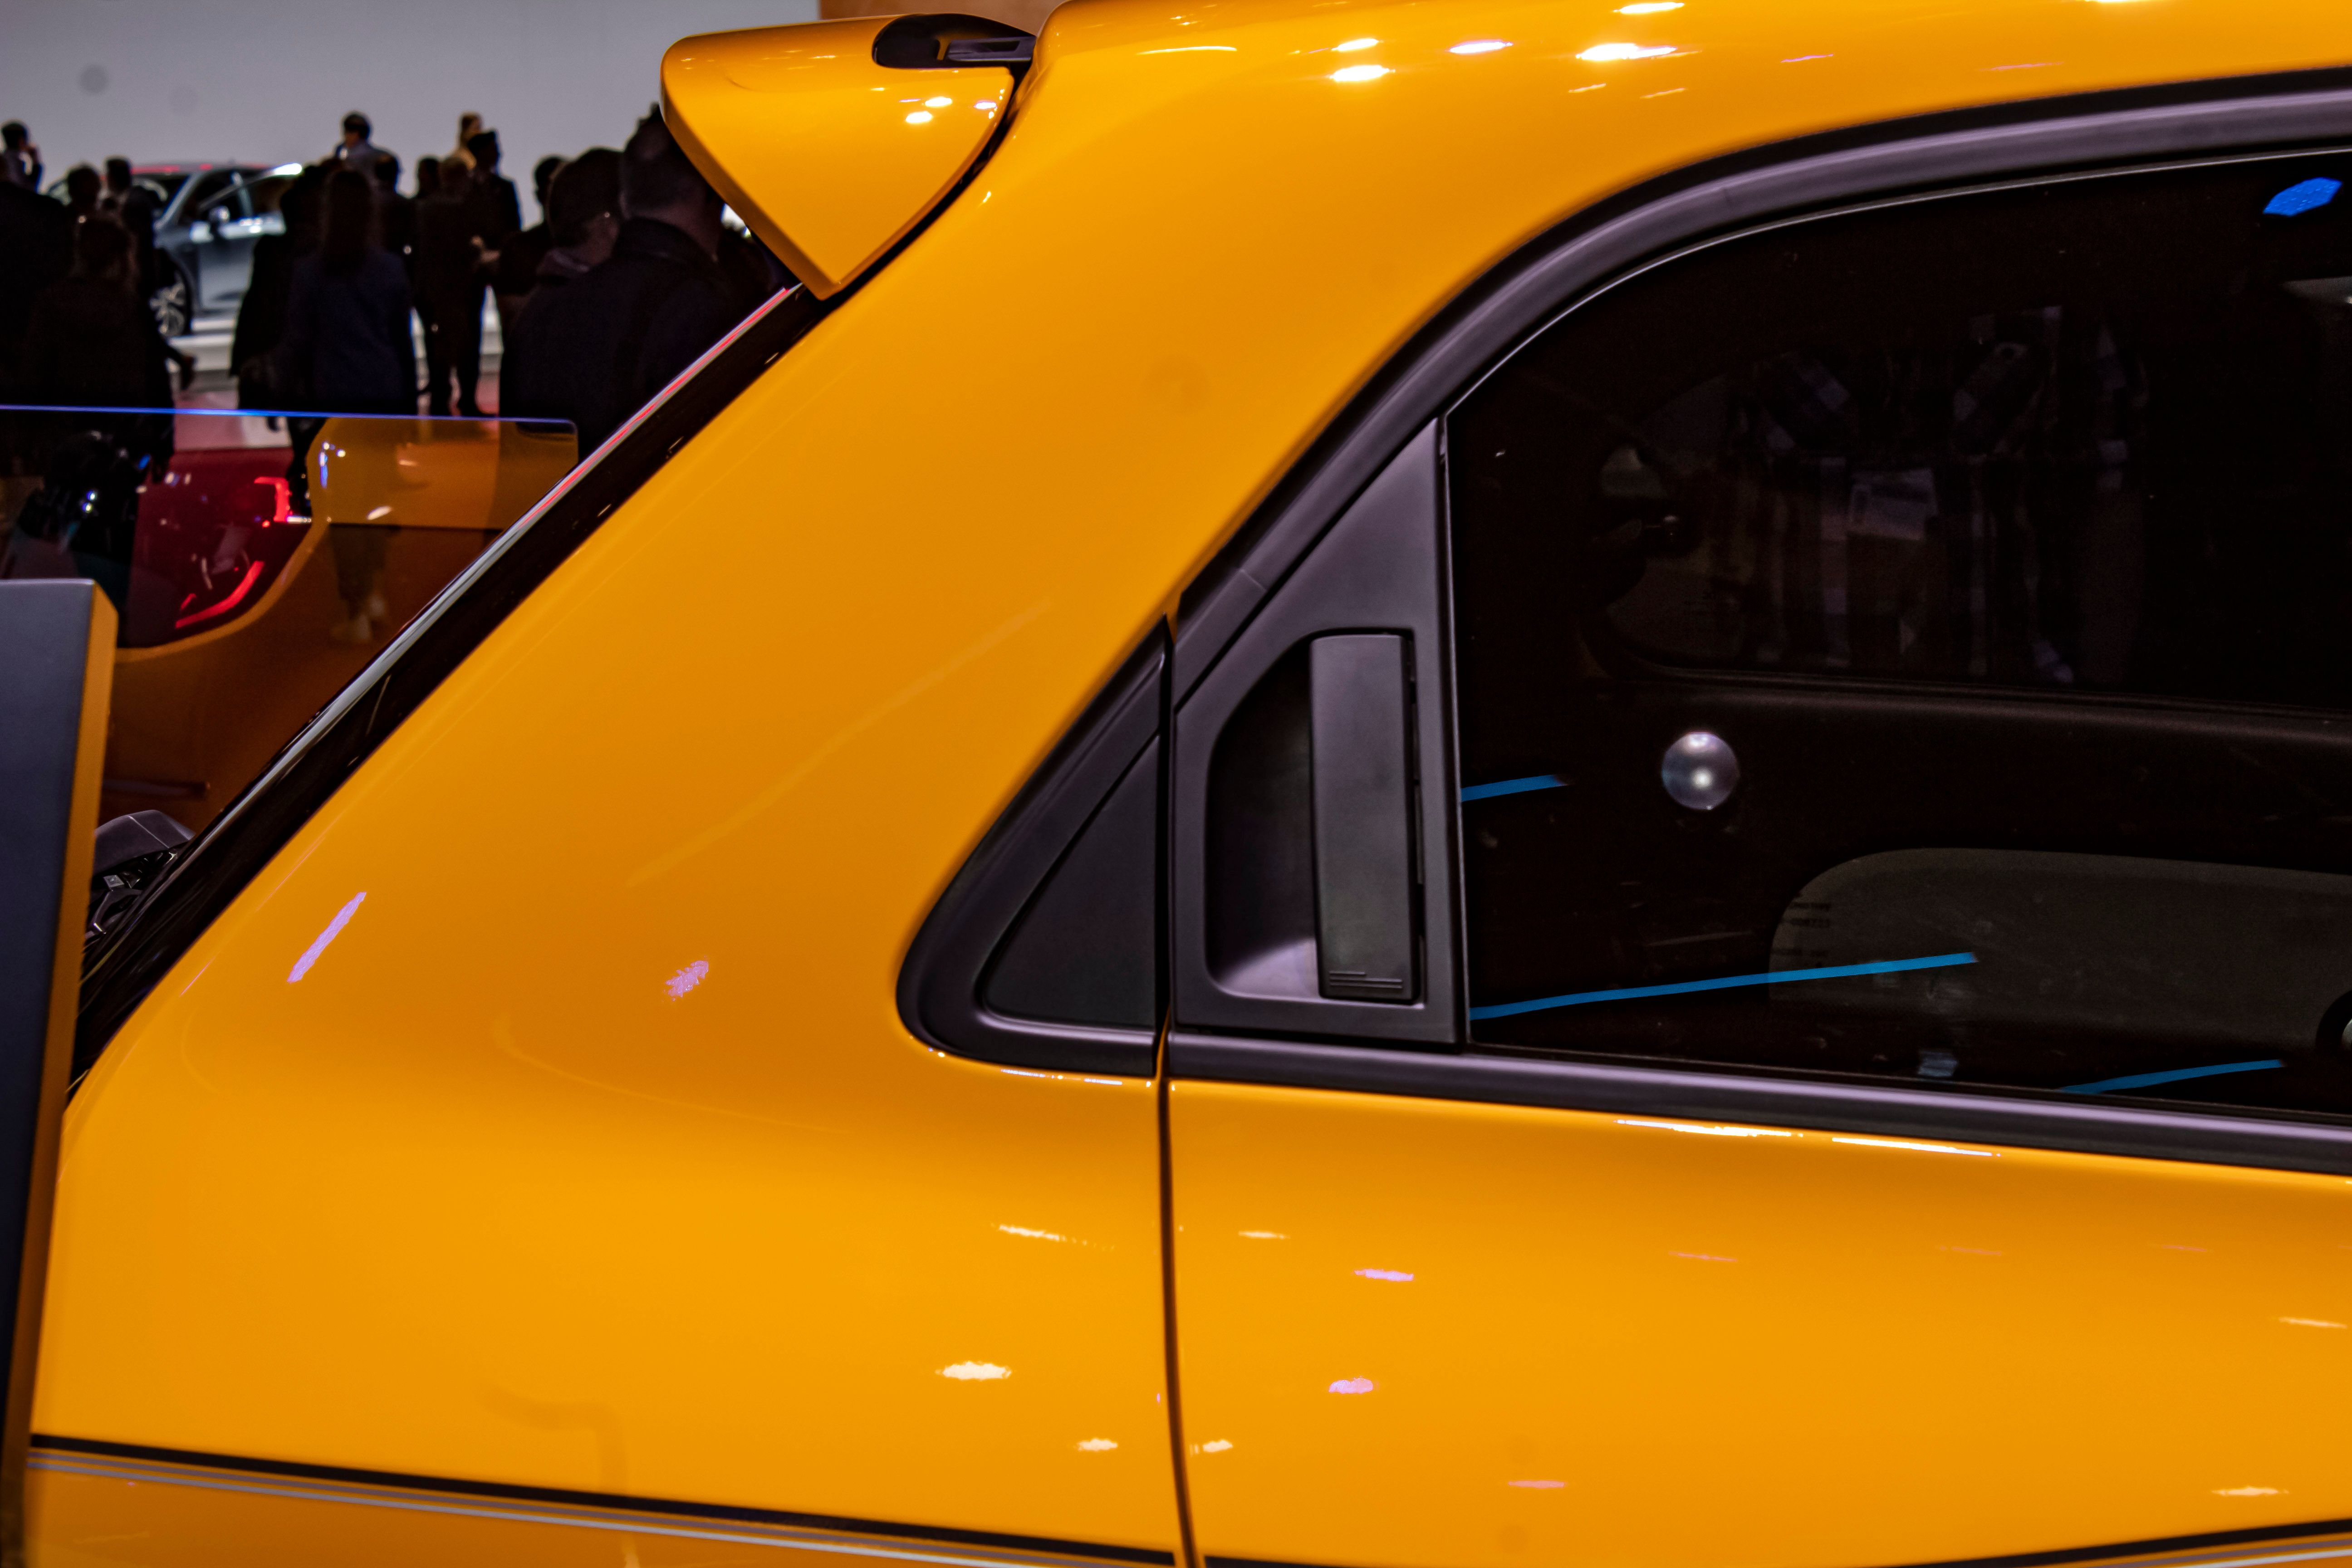 2019 Renault Twingo